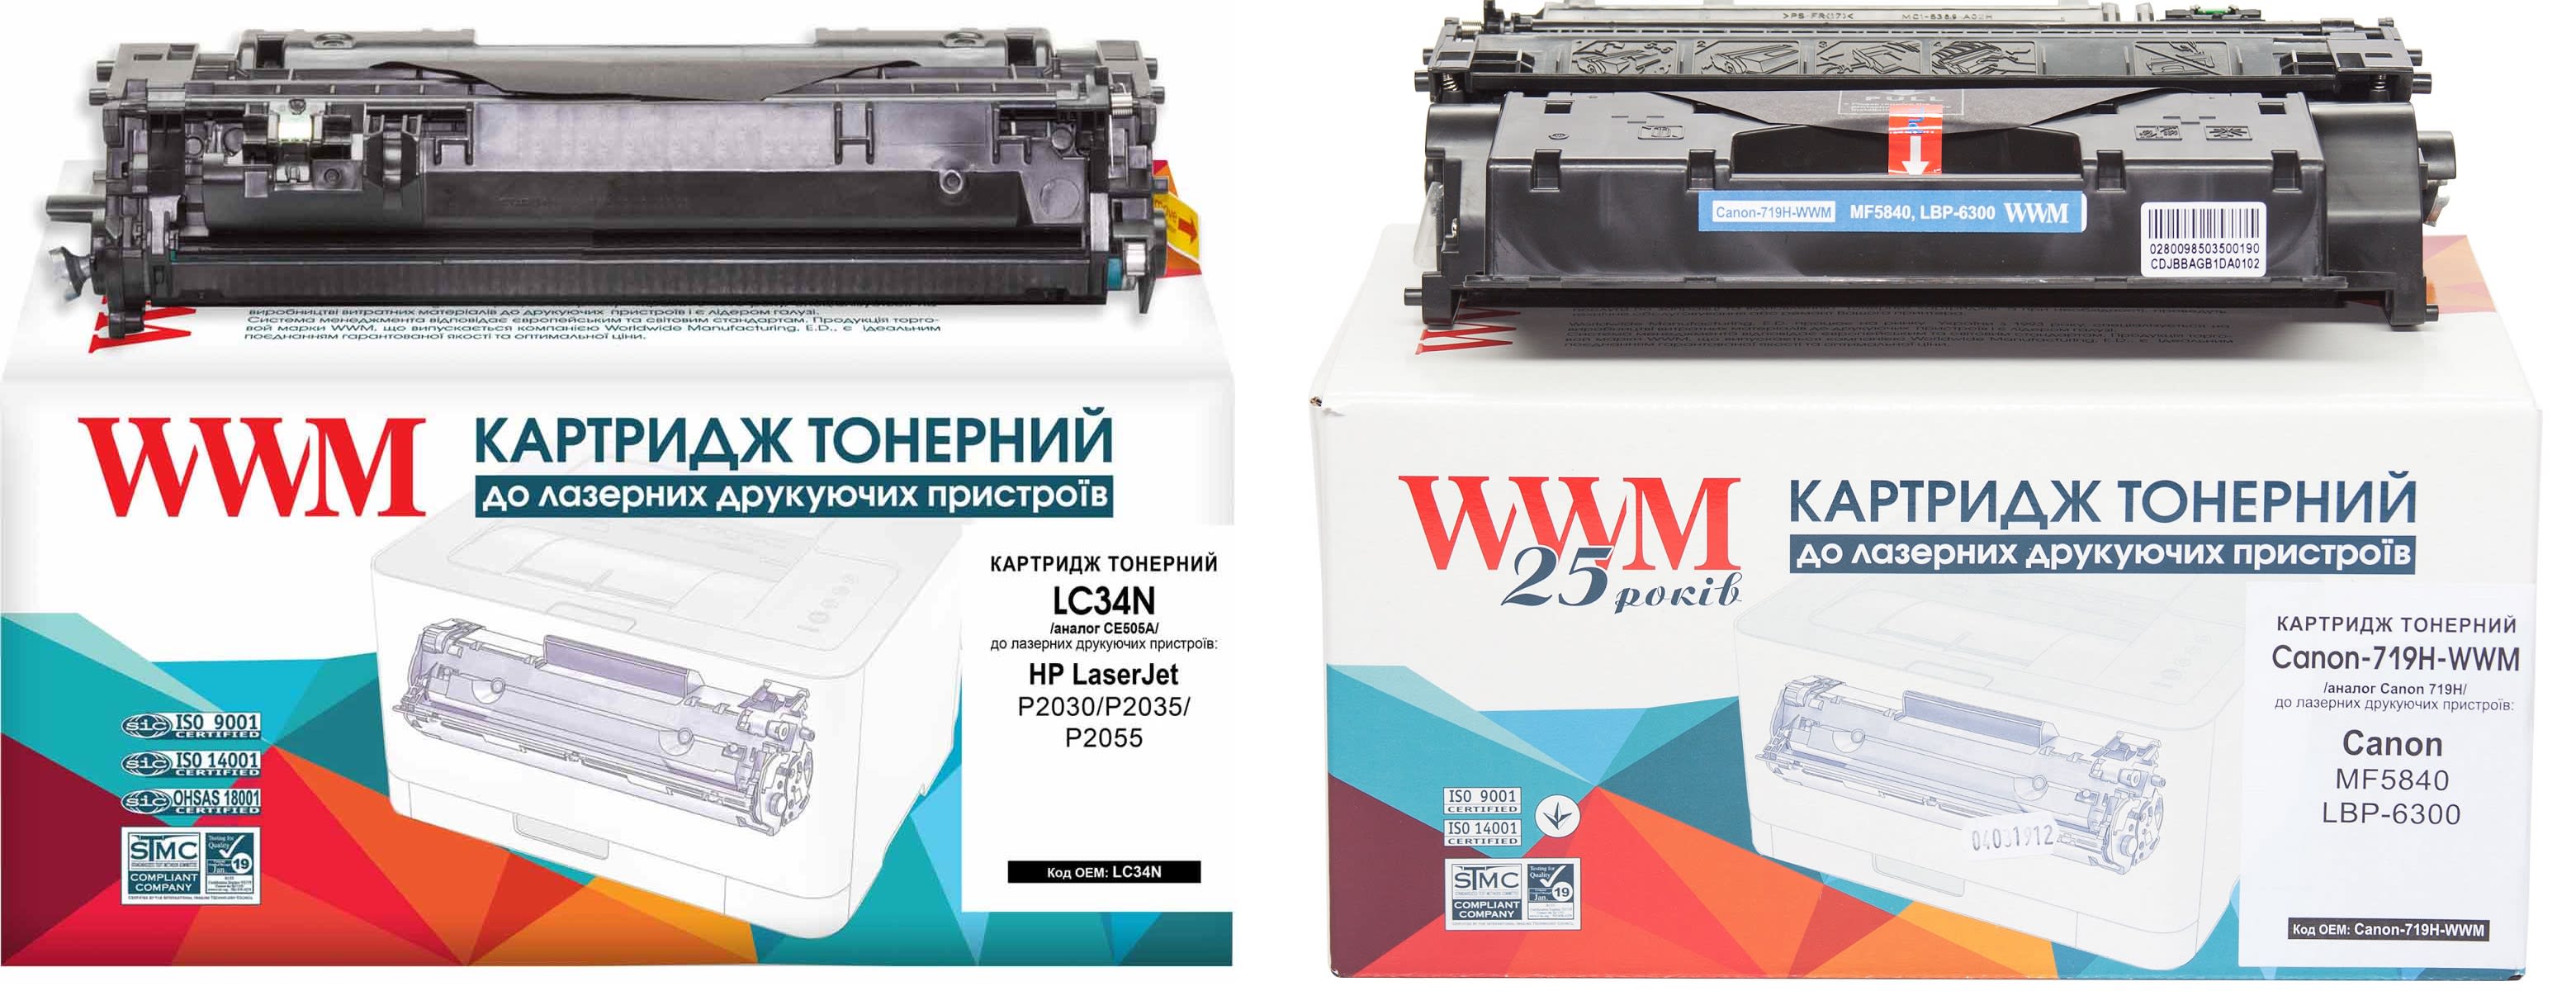 Картриджи WWM LC48N и Canon-719H-WWM для Canon i-Sensys LBP-251dw Купить комплект картриджей.